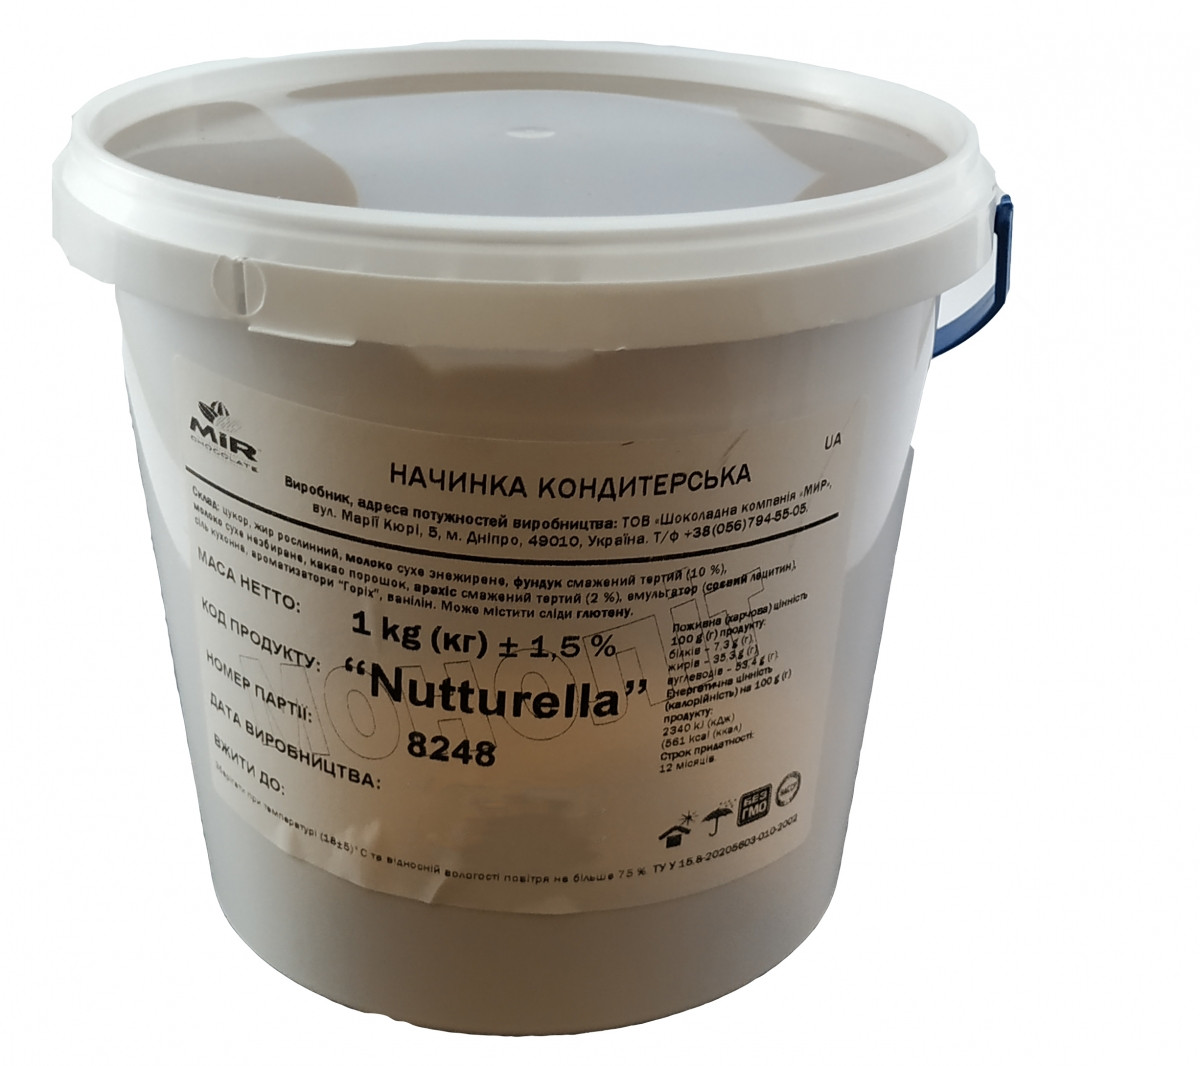 Начинка "Nutturella"